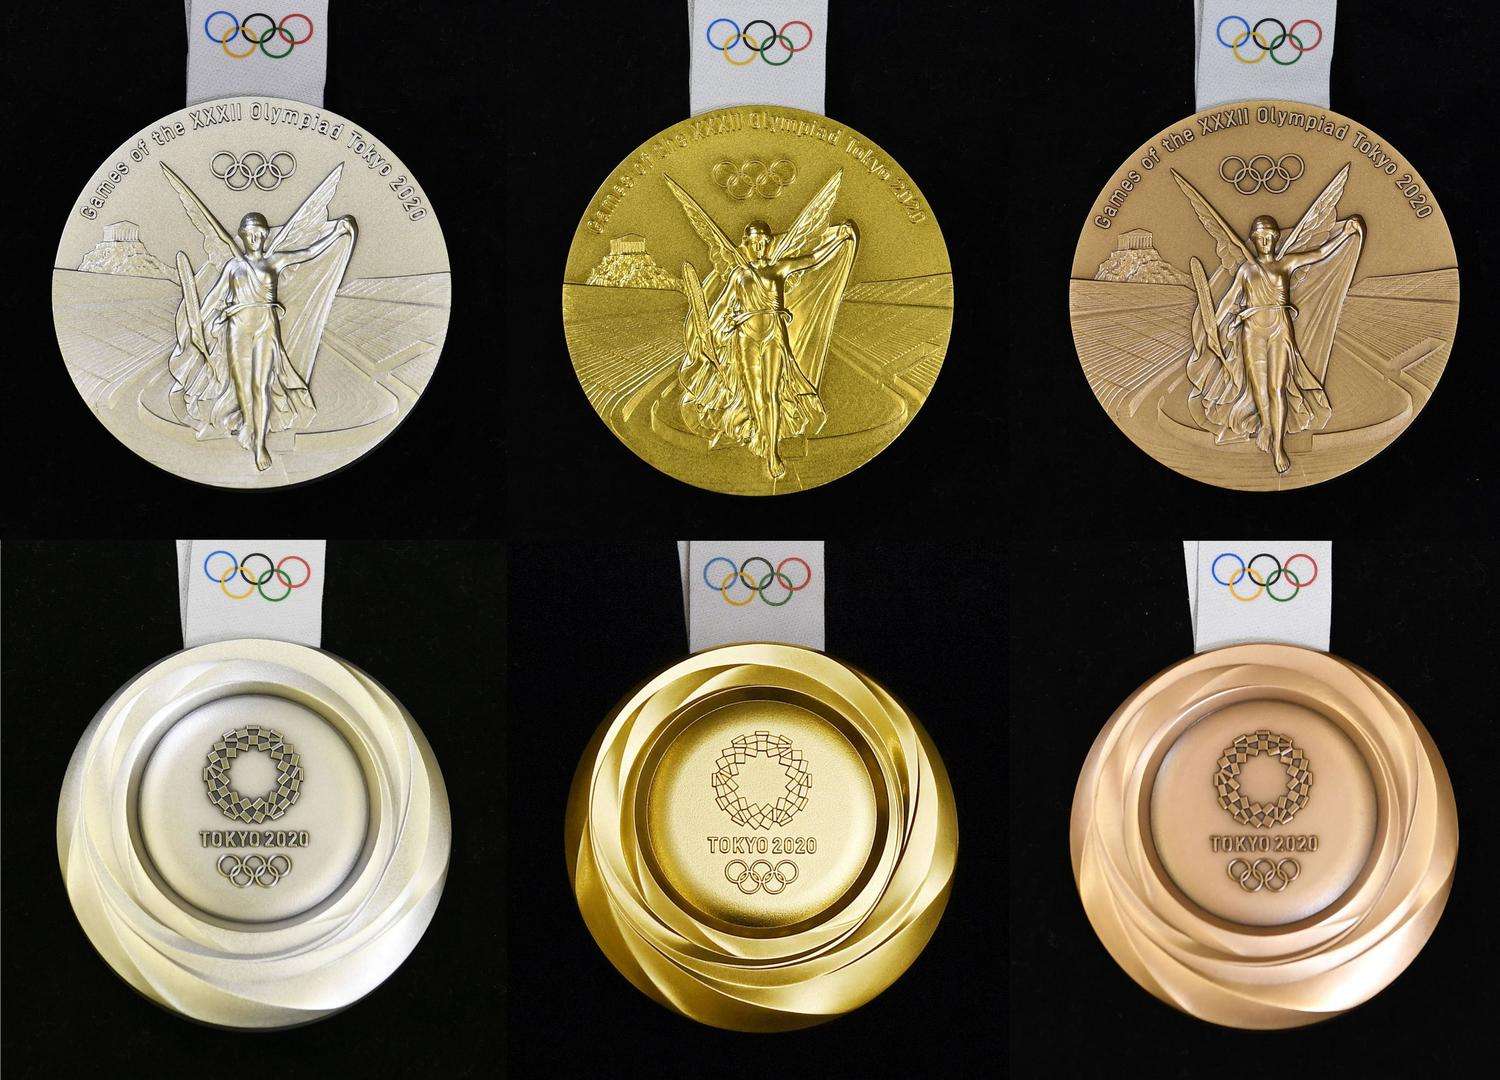 第一届奥运会奖牌图片